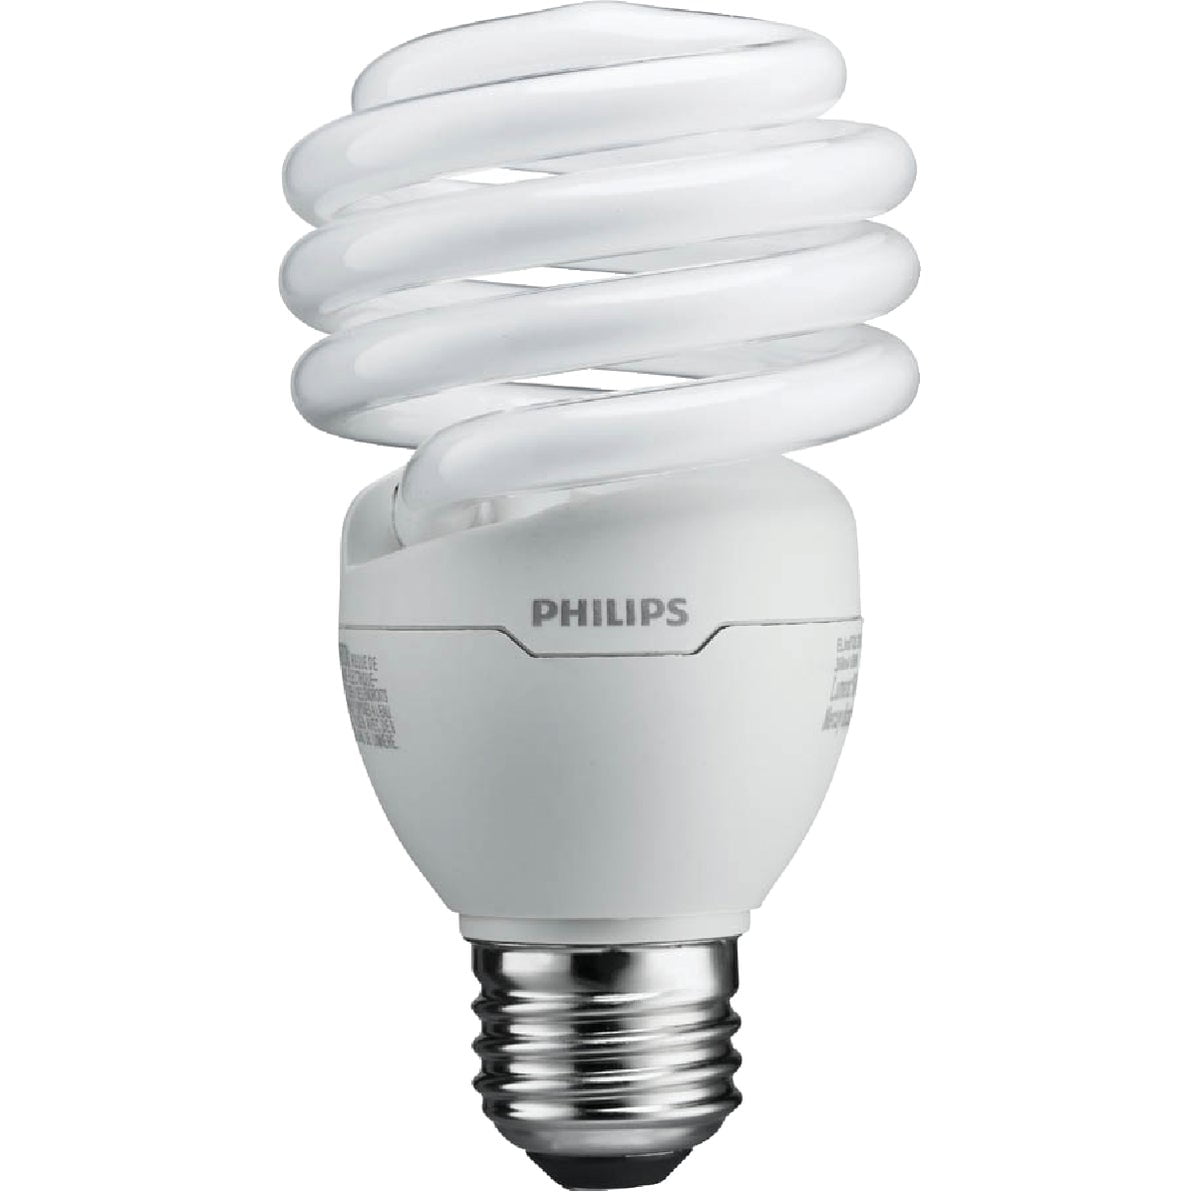 Philips EL/O 15 Compact Florescent Light Bulb 